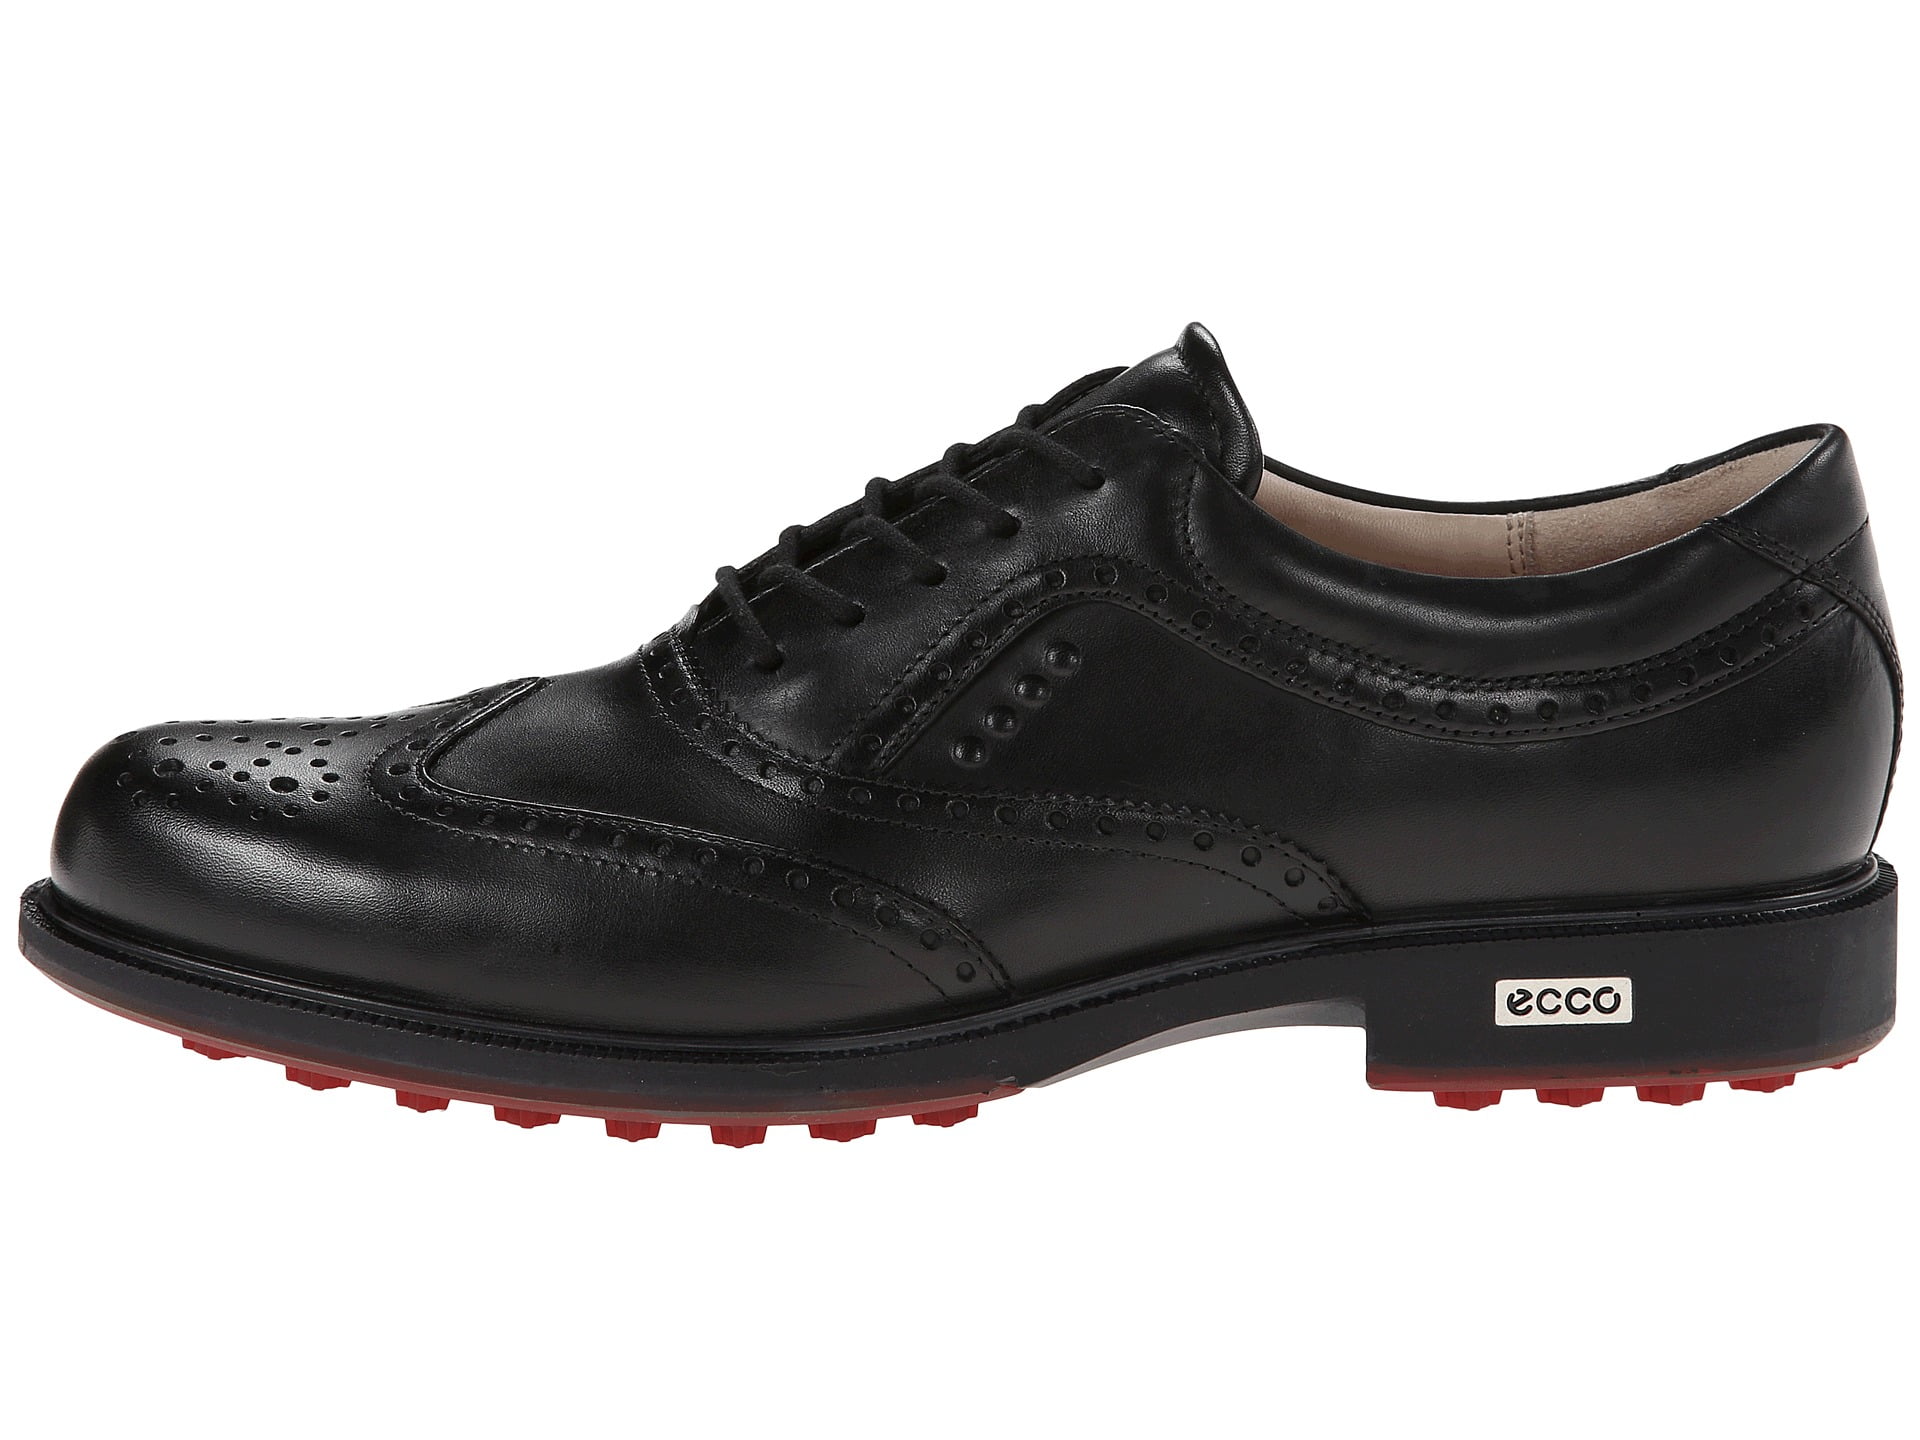 ECCO Men's Tour Hybrid Wingtip Golf Shoes Black/Brick 46.0 EU / US) - Walmart.com